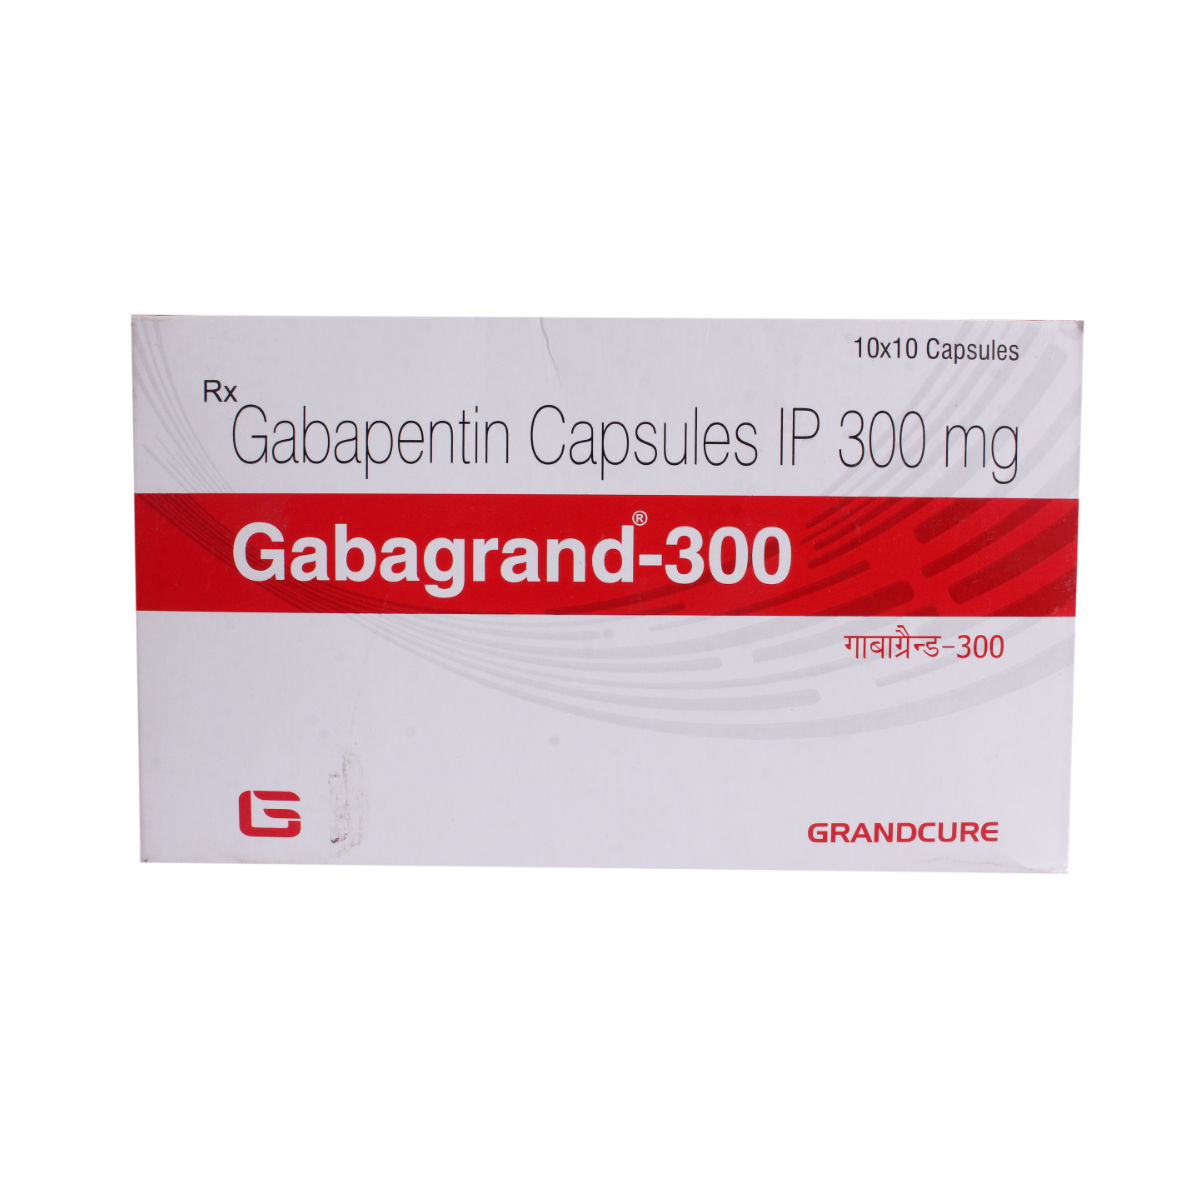 Gabagrand-300 Cap 10'S, Pack of 10 CAPSULES